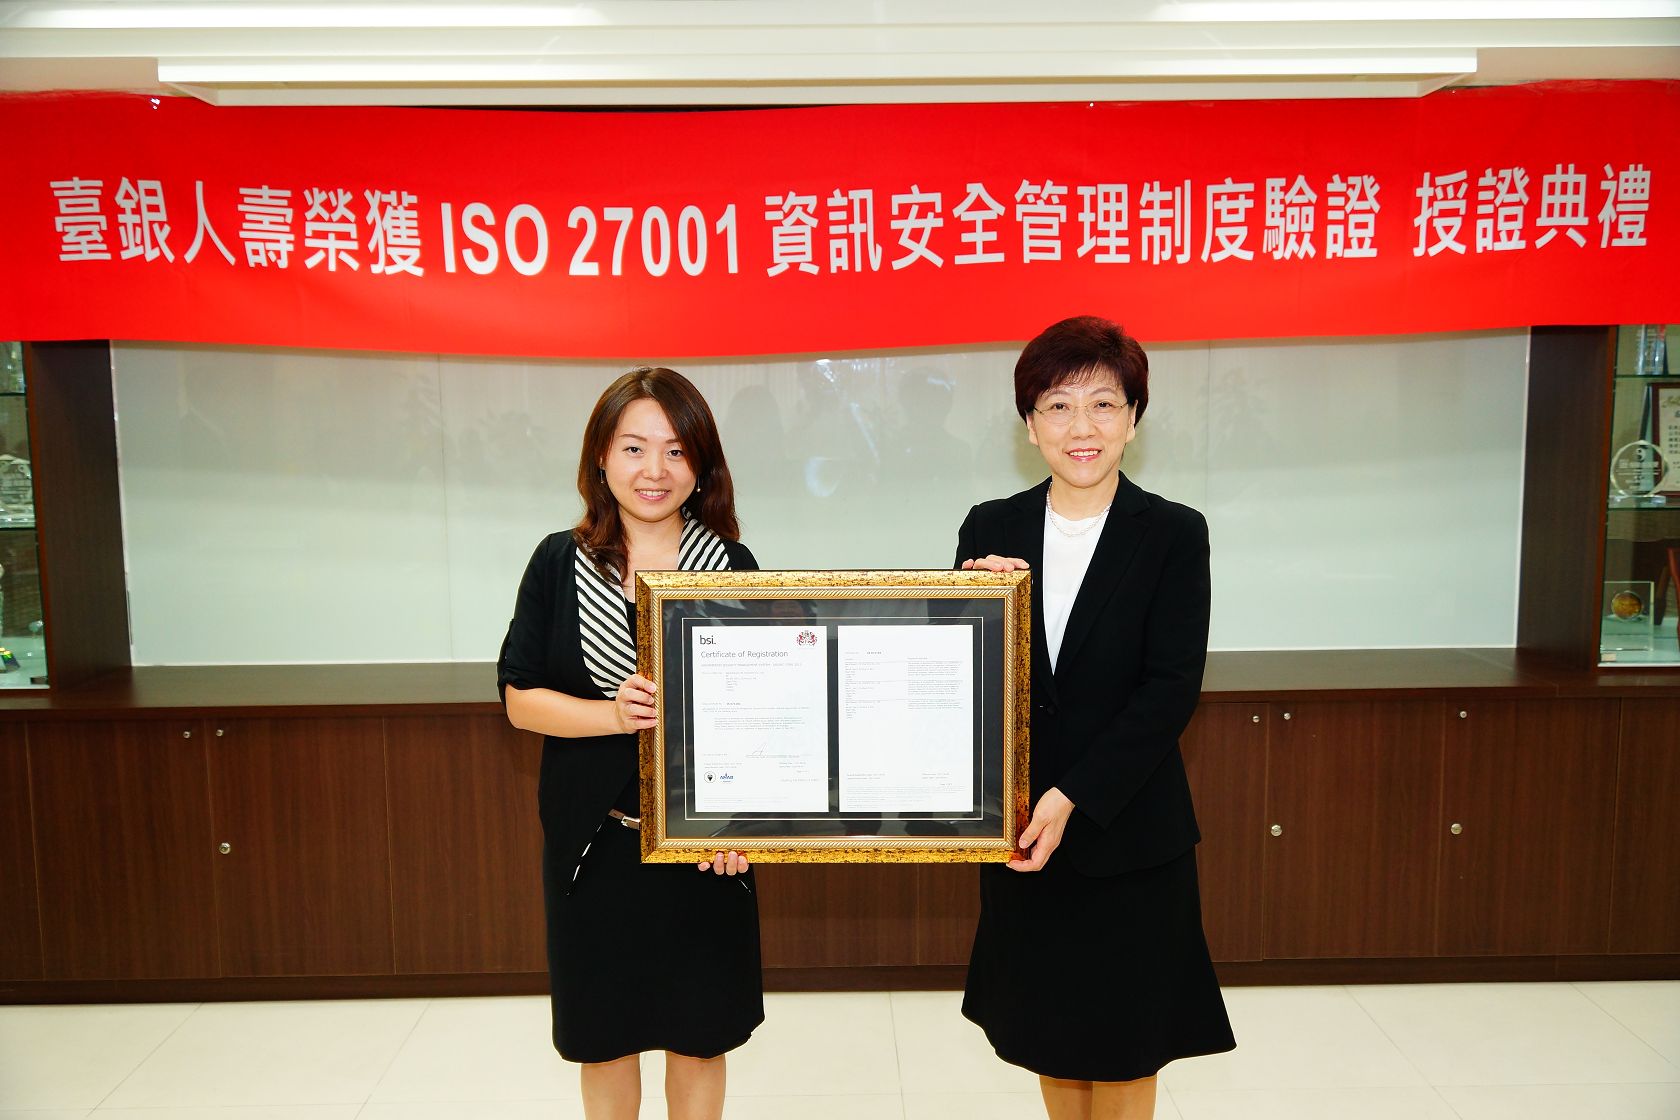 臺銀人壽榮獲ISO 27001資訊安全管理系統驗證通過